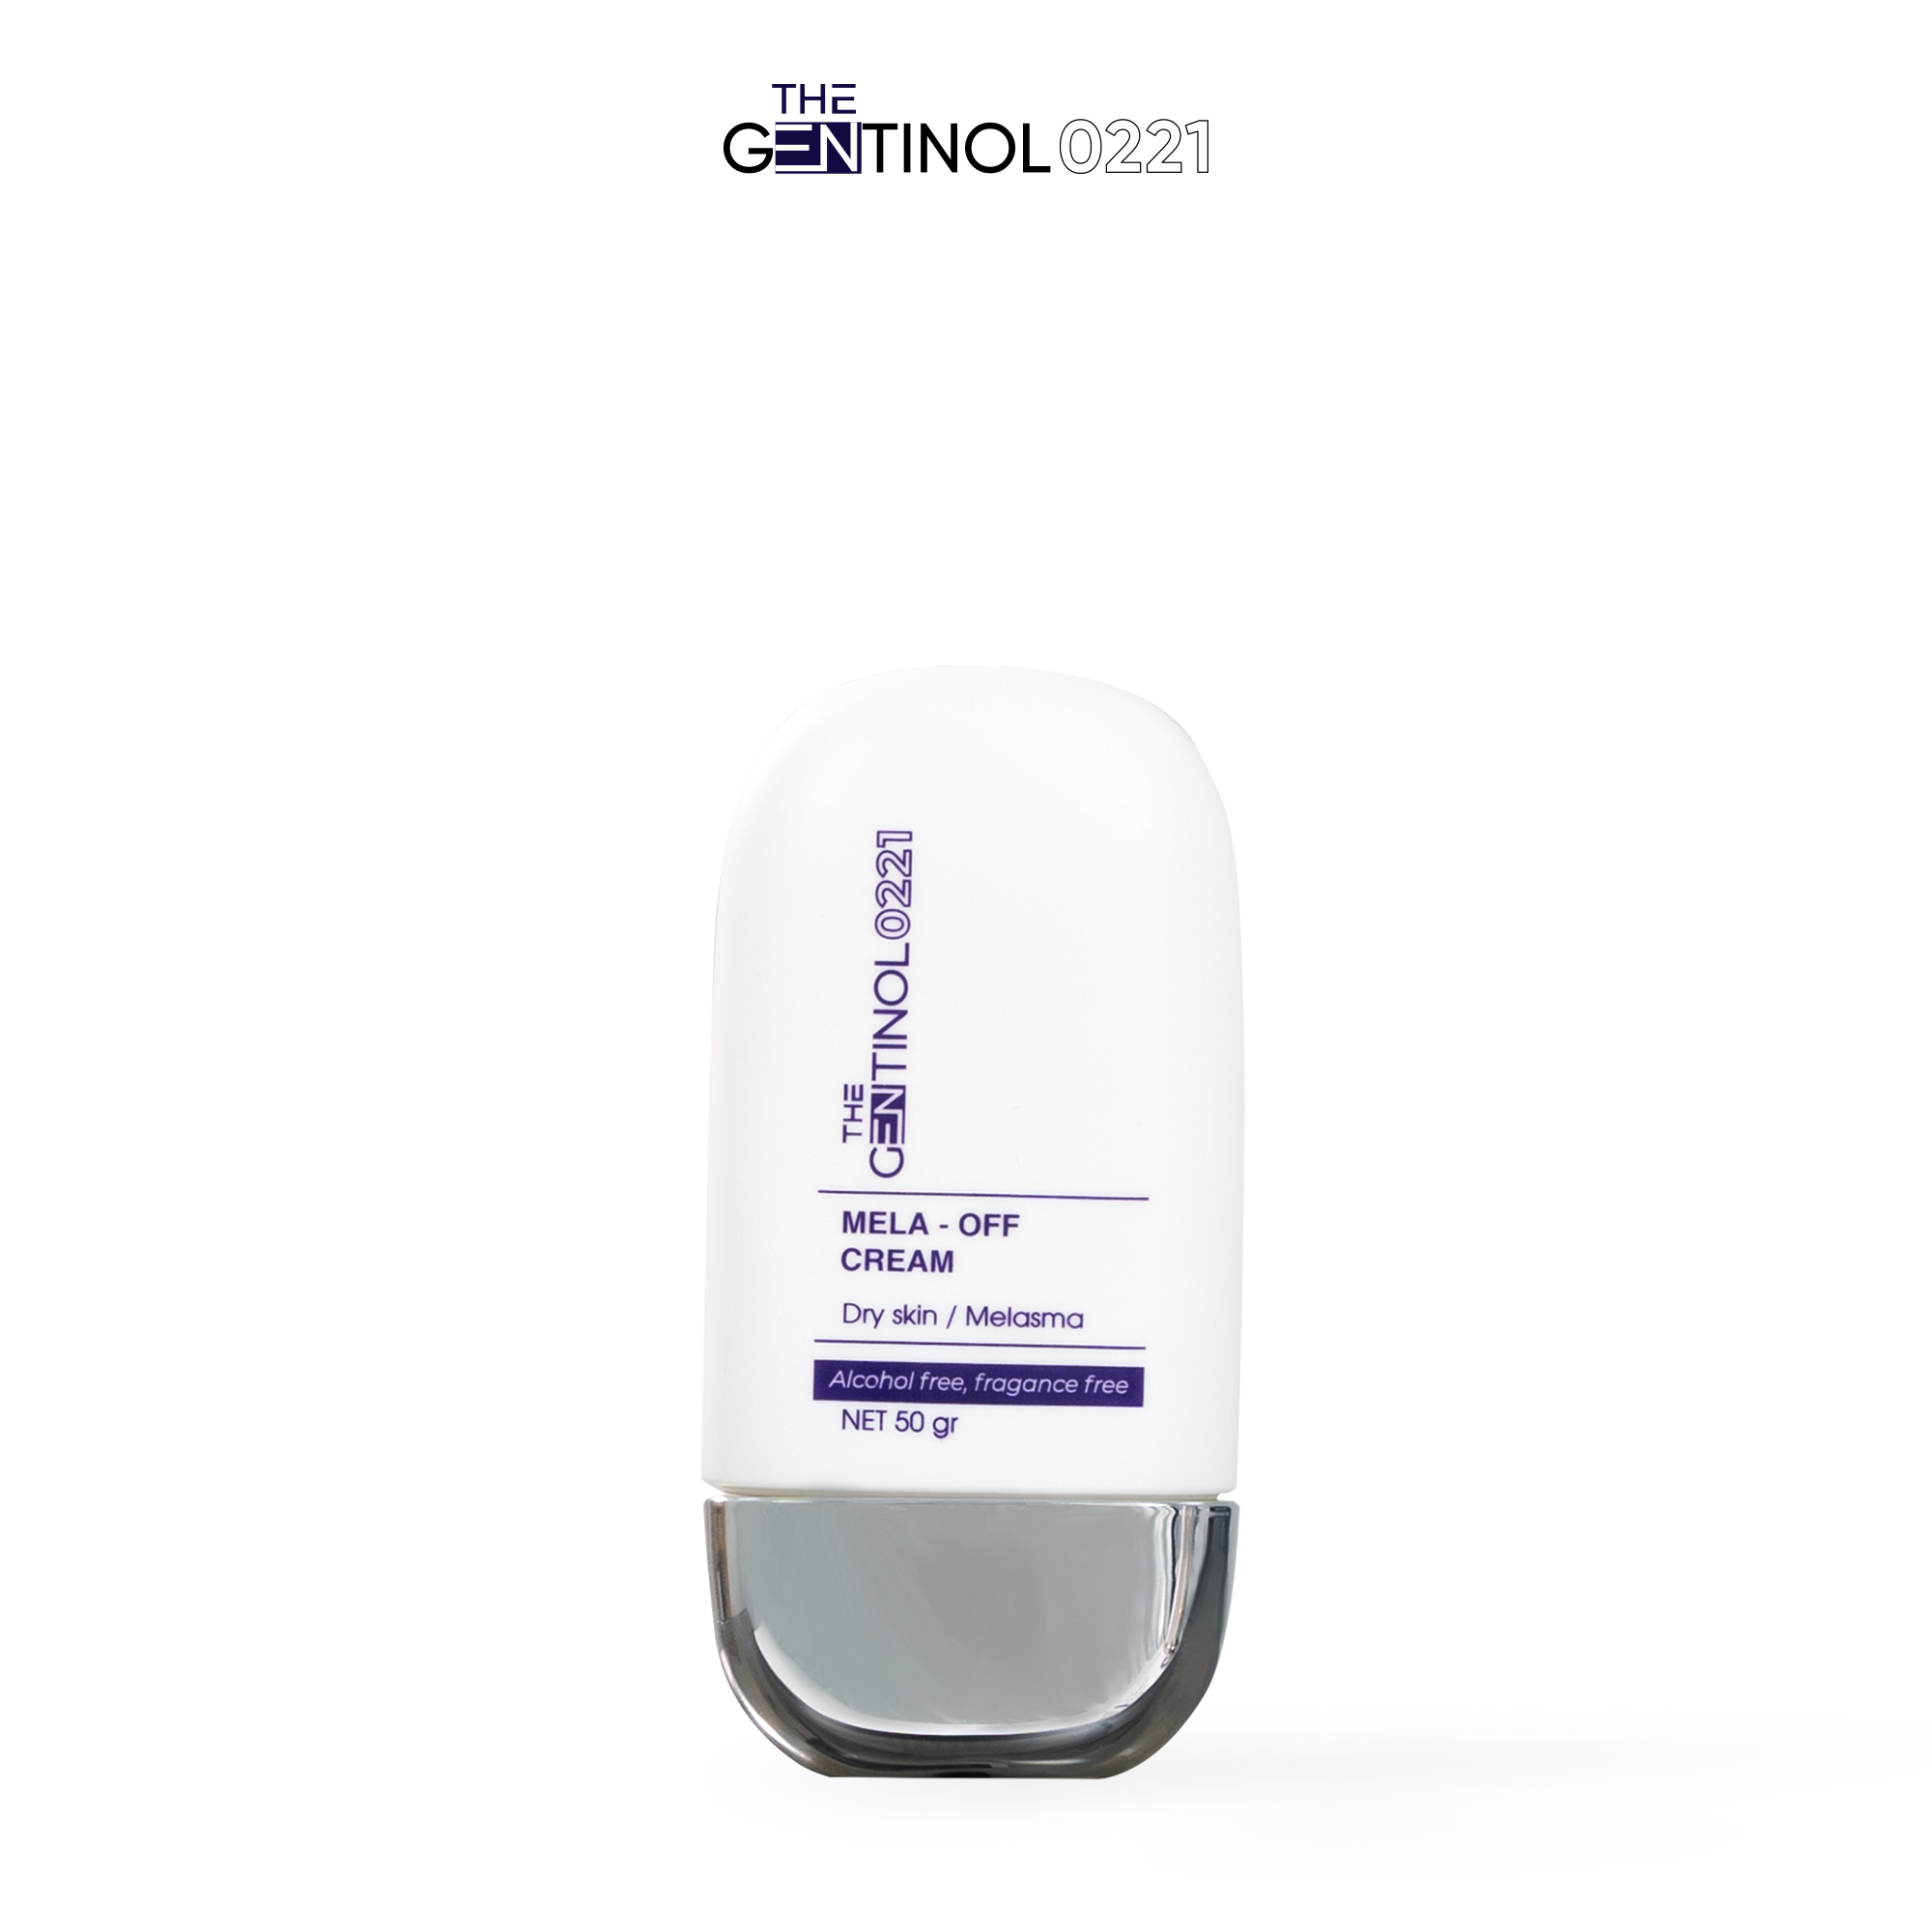 Kem giảm nếp nhăn, hỗ trợ duy trì độ đàn hồi của da, làm đều màu da và dưỡng da trắng sáng mịn màng The Gentinol 0221 50gr